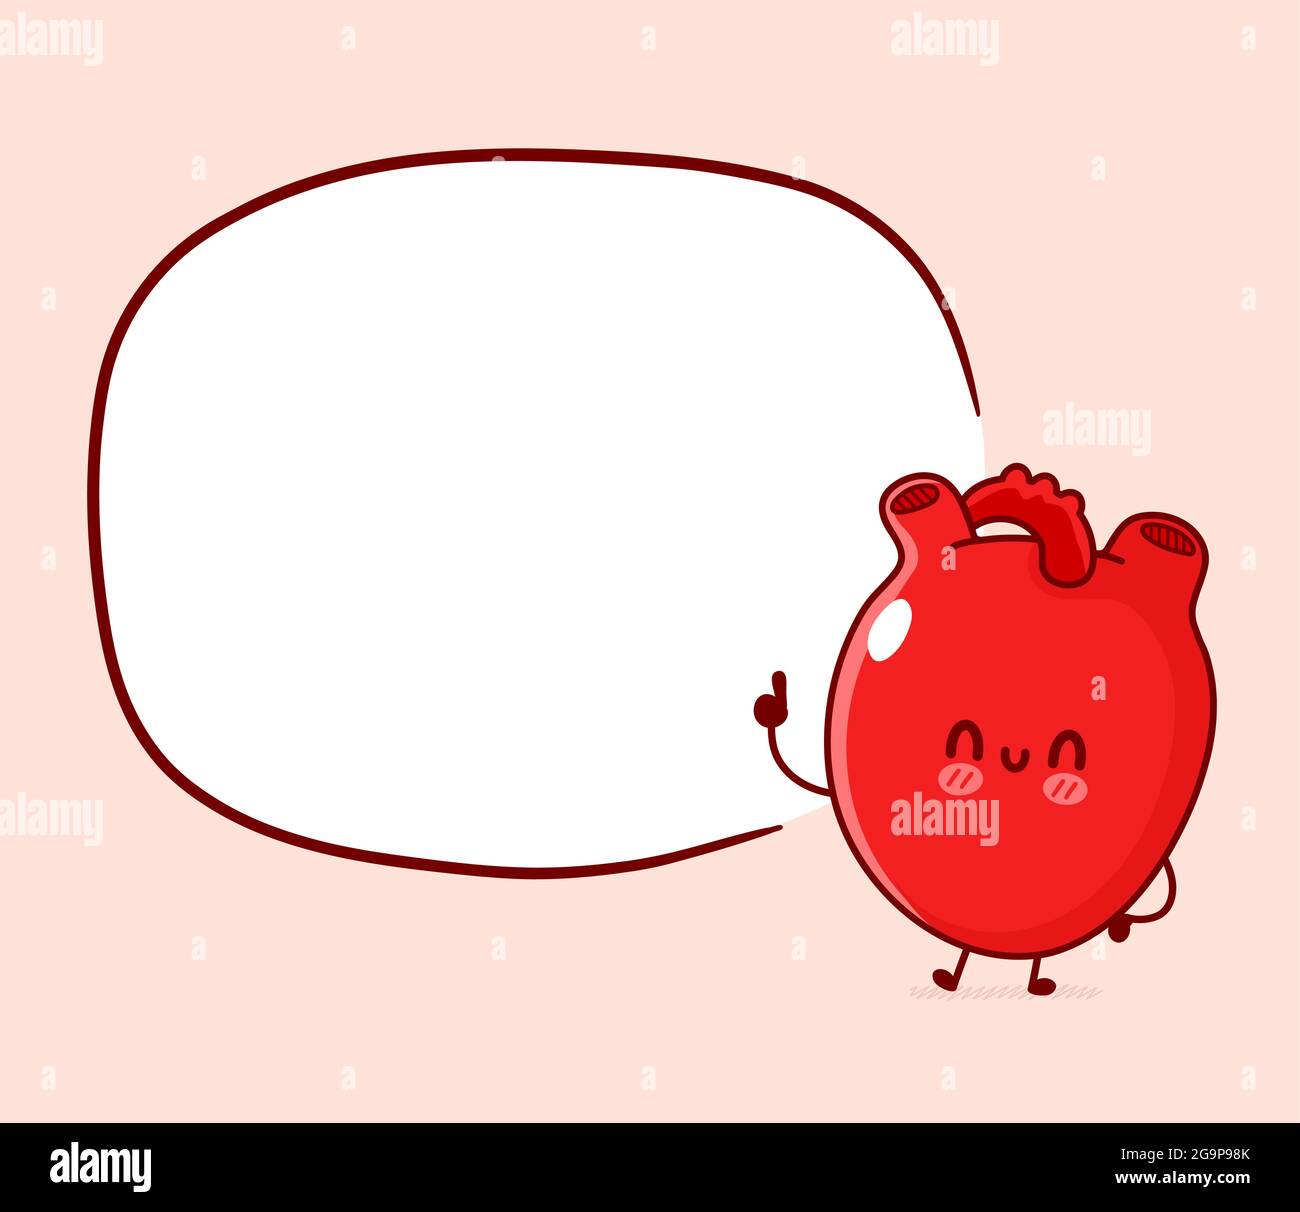 Carino divertente organo cuore umano con casella di testo. Vettoriale linea piatta doodle cartoon kawaii personaggio illustrazione. Organo cuore umano, anatomia cartone animato mascotte concetto di carattere Illustrazione Vettoriale